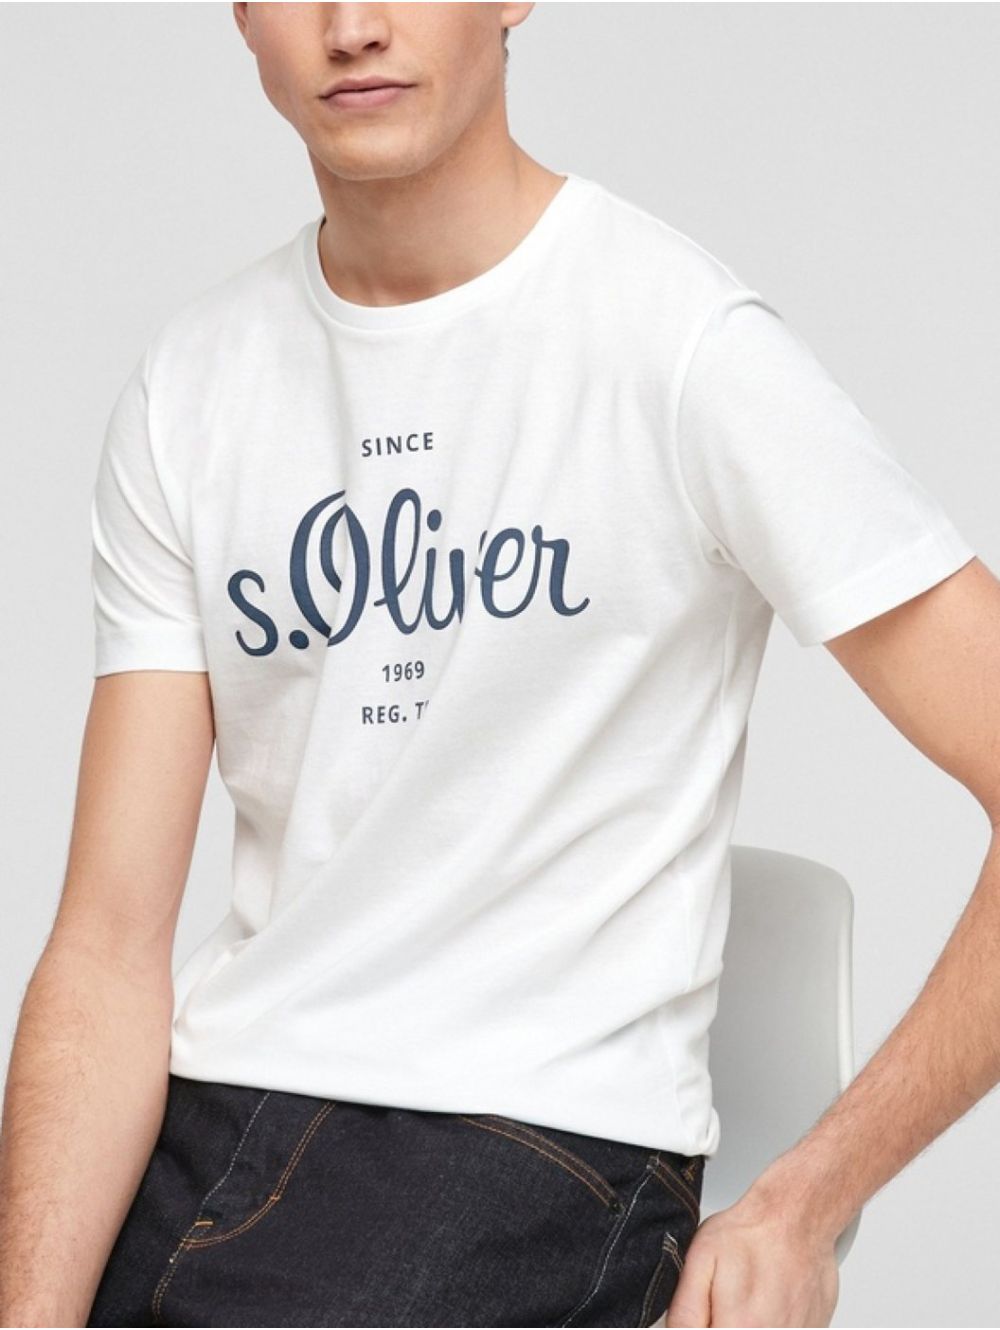 S.OLIVER Men\'s white short-sleeved jersey 2057432-0100 White T-Shirt